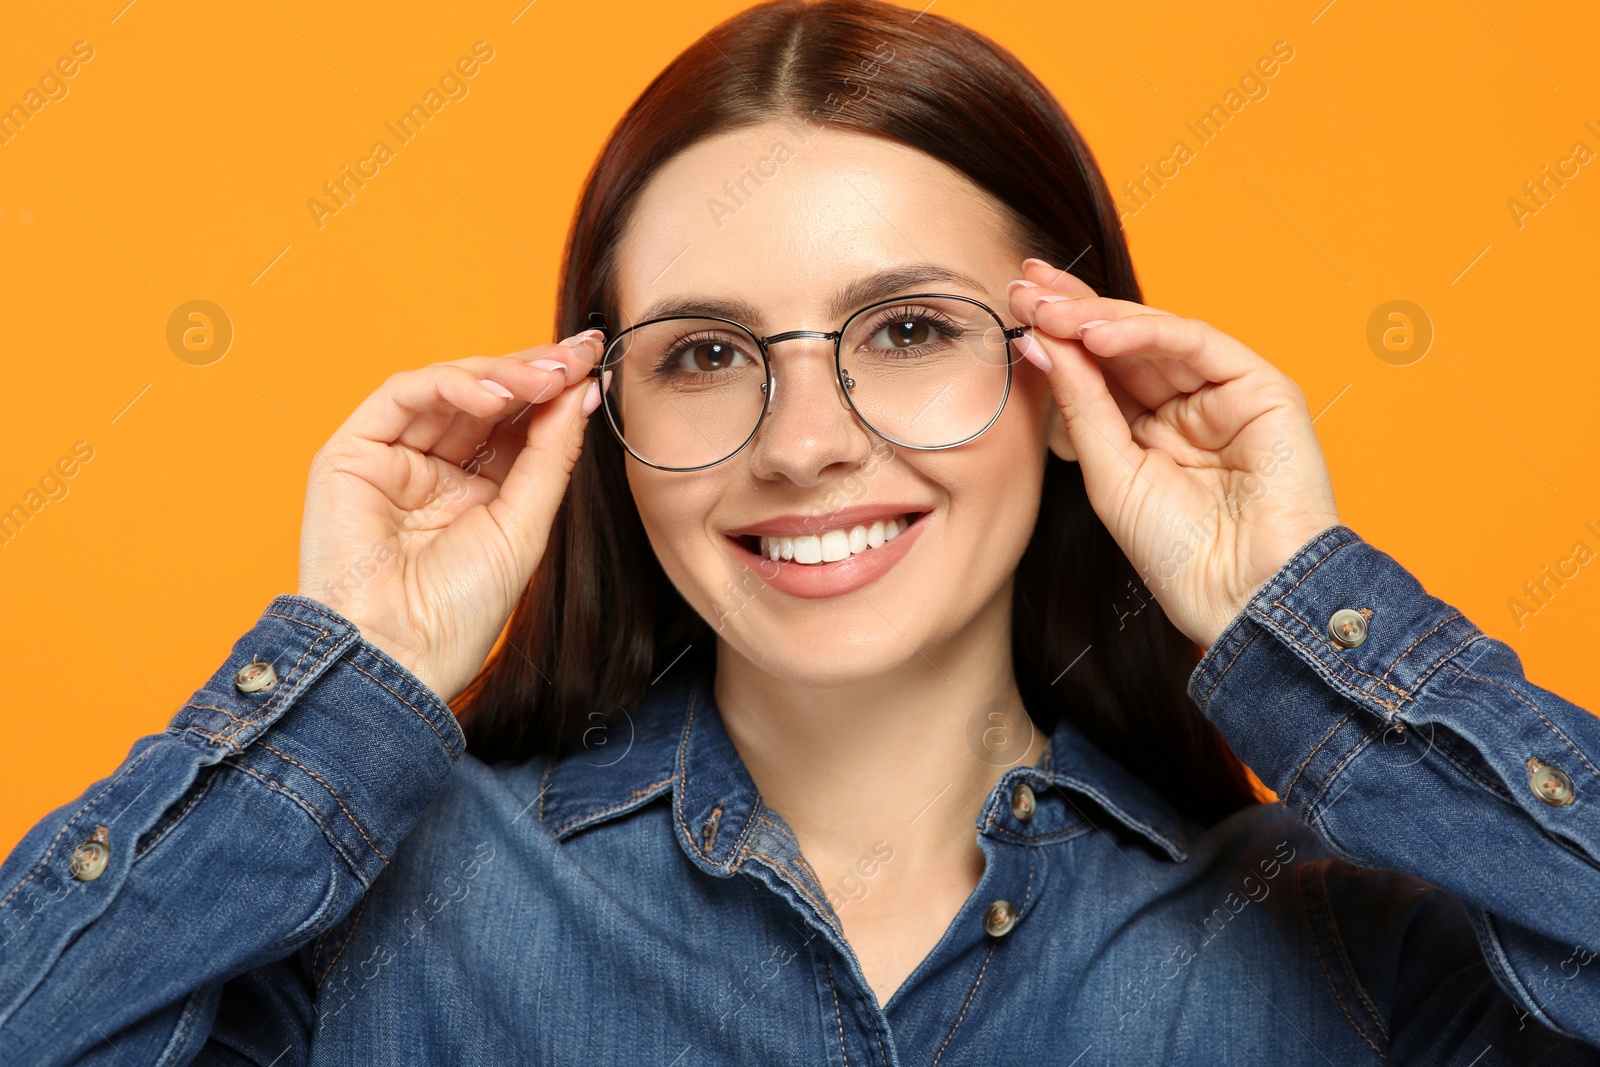 Photo of Portrait of smiling woman in stylish eyeglasses on orange background